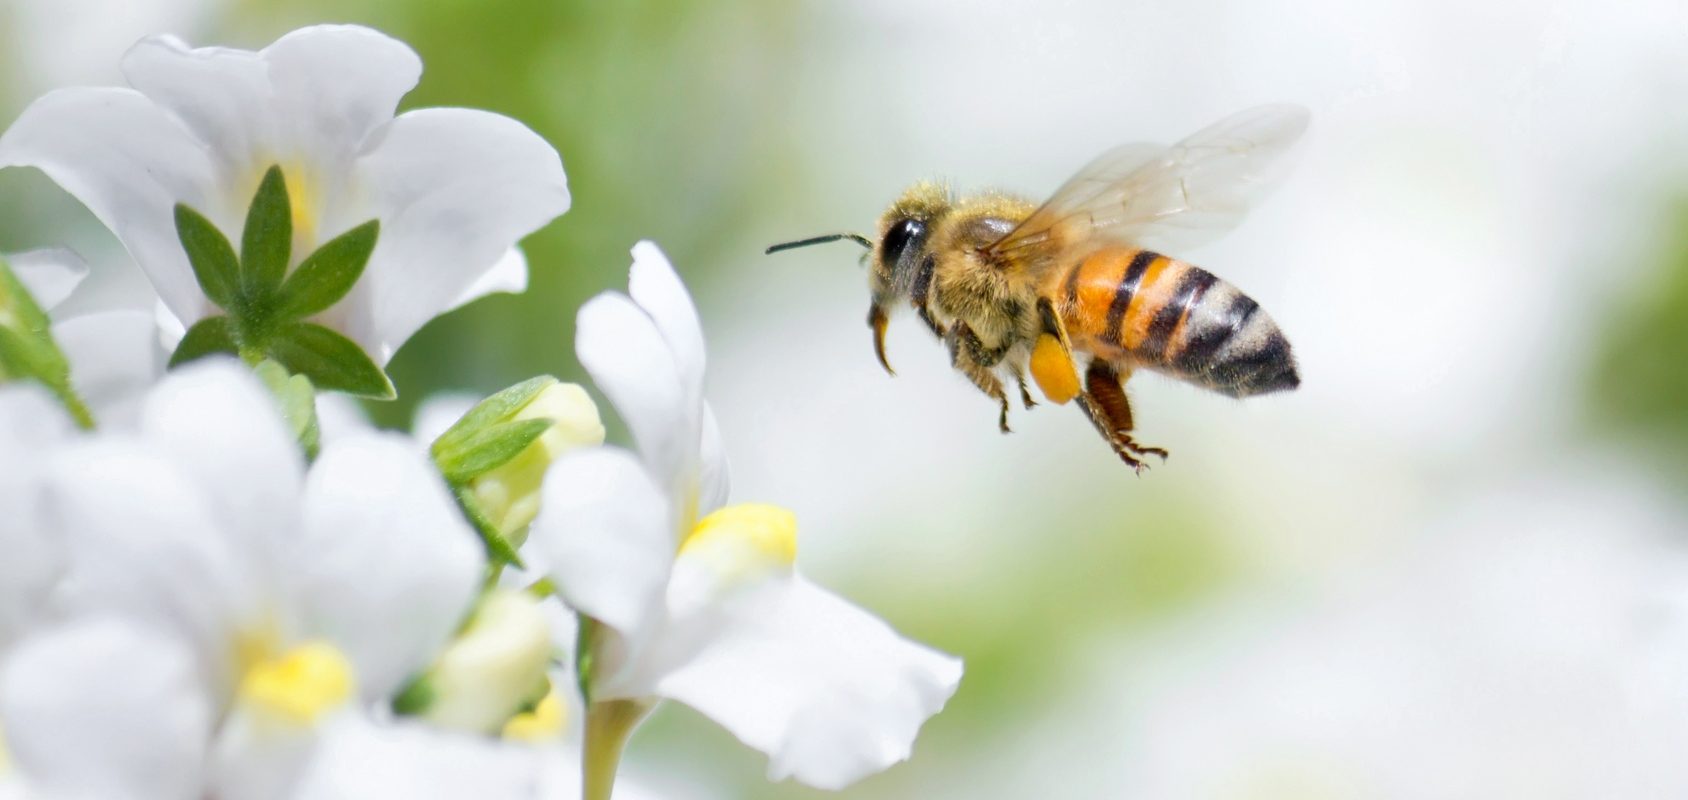 Pszczoła miodna - ratuj pszczoły przed pestycydami. Sprawdź, jak pomóc pszczołom!